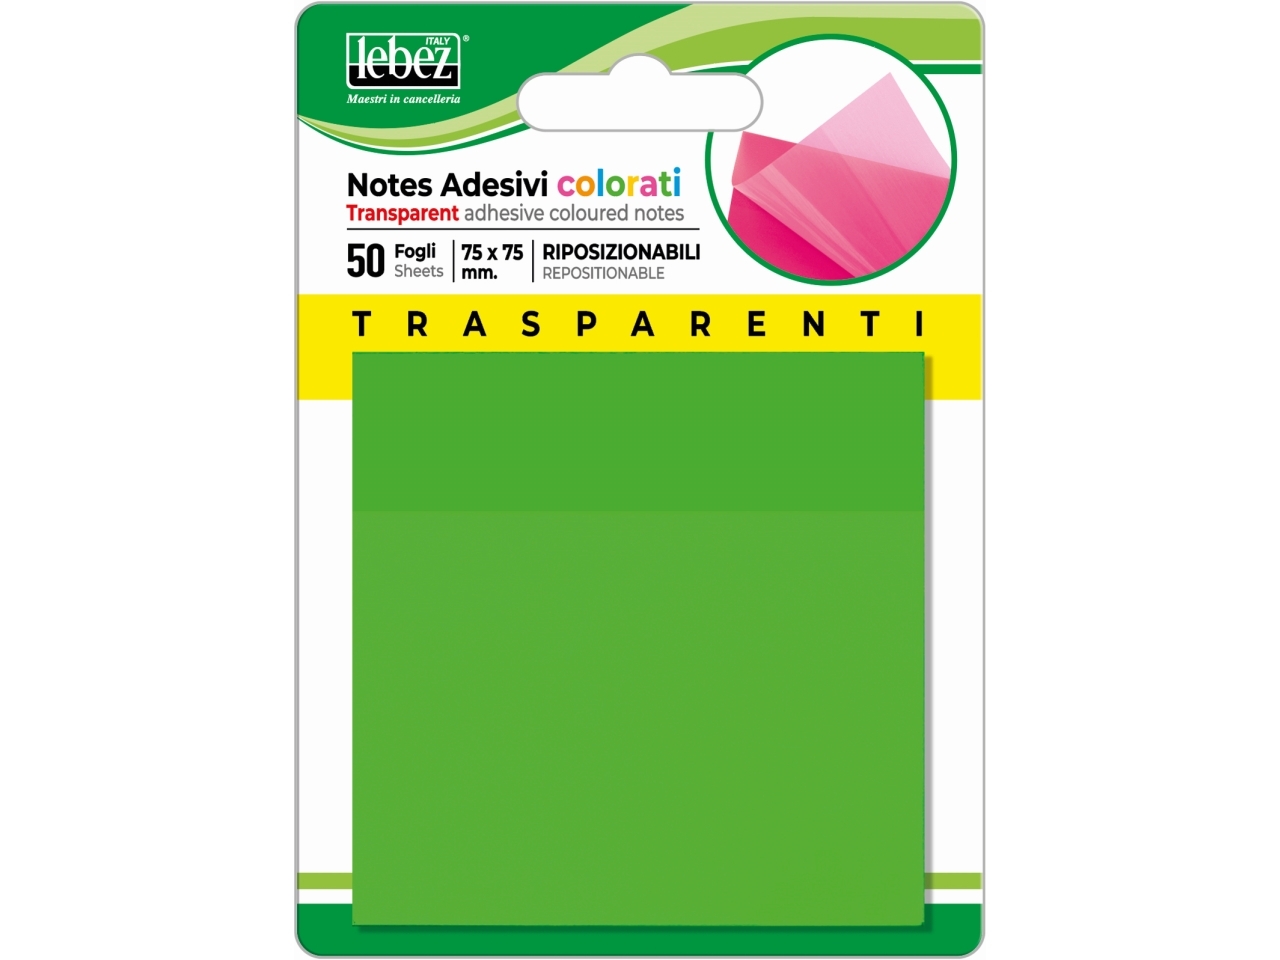 Notes adesivi trasparenti colorati 75x75mm riposizionabili - blocchetto da  50 fogli notes